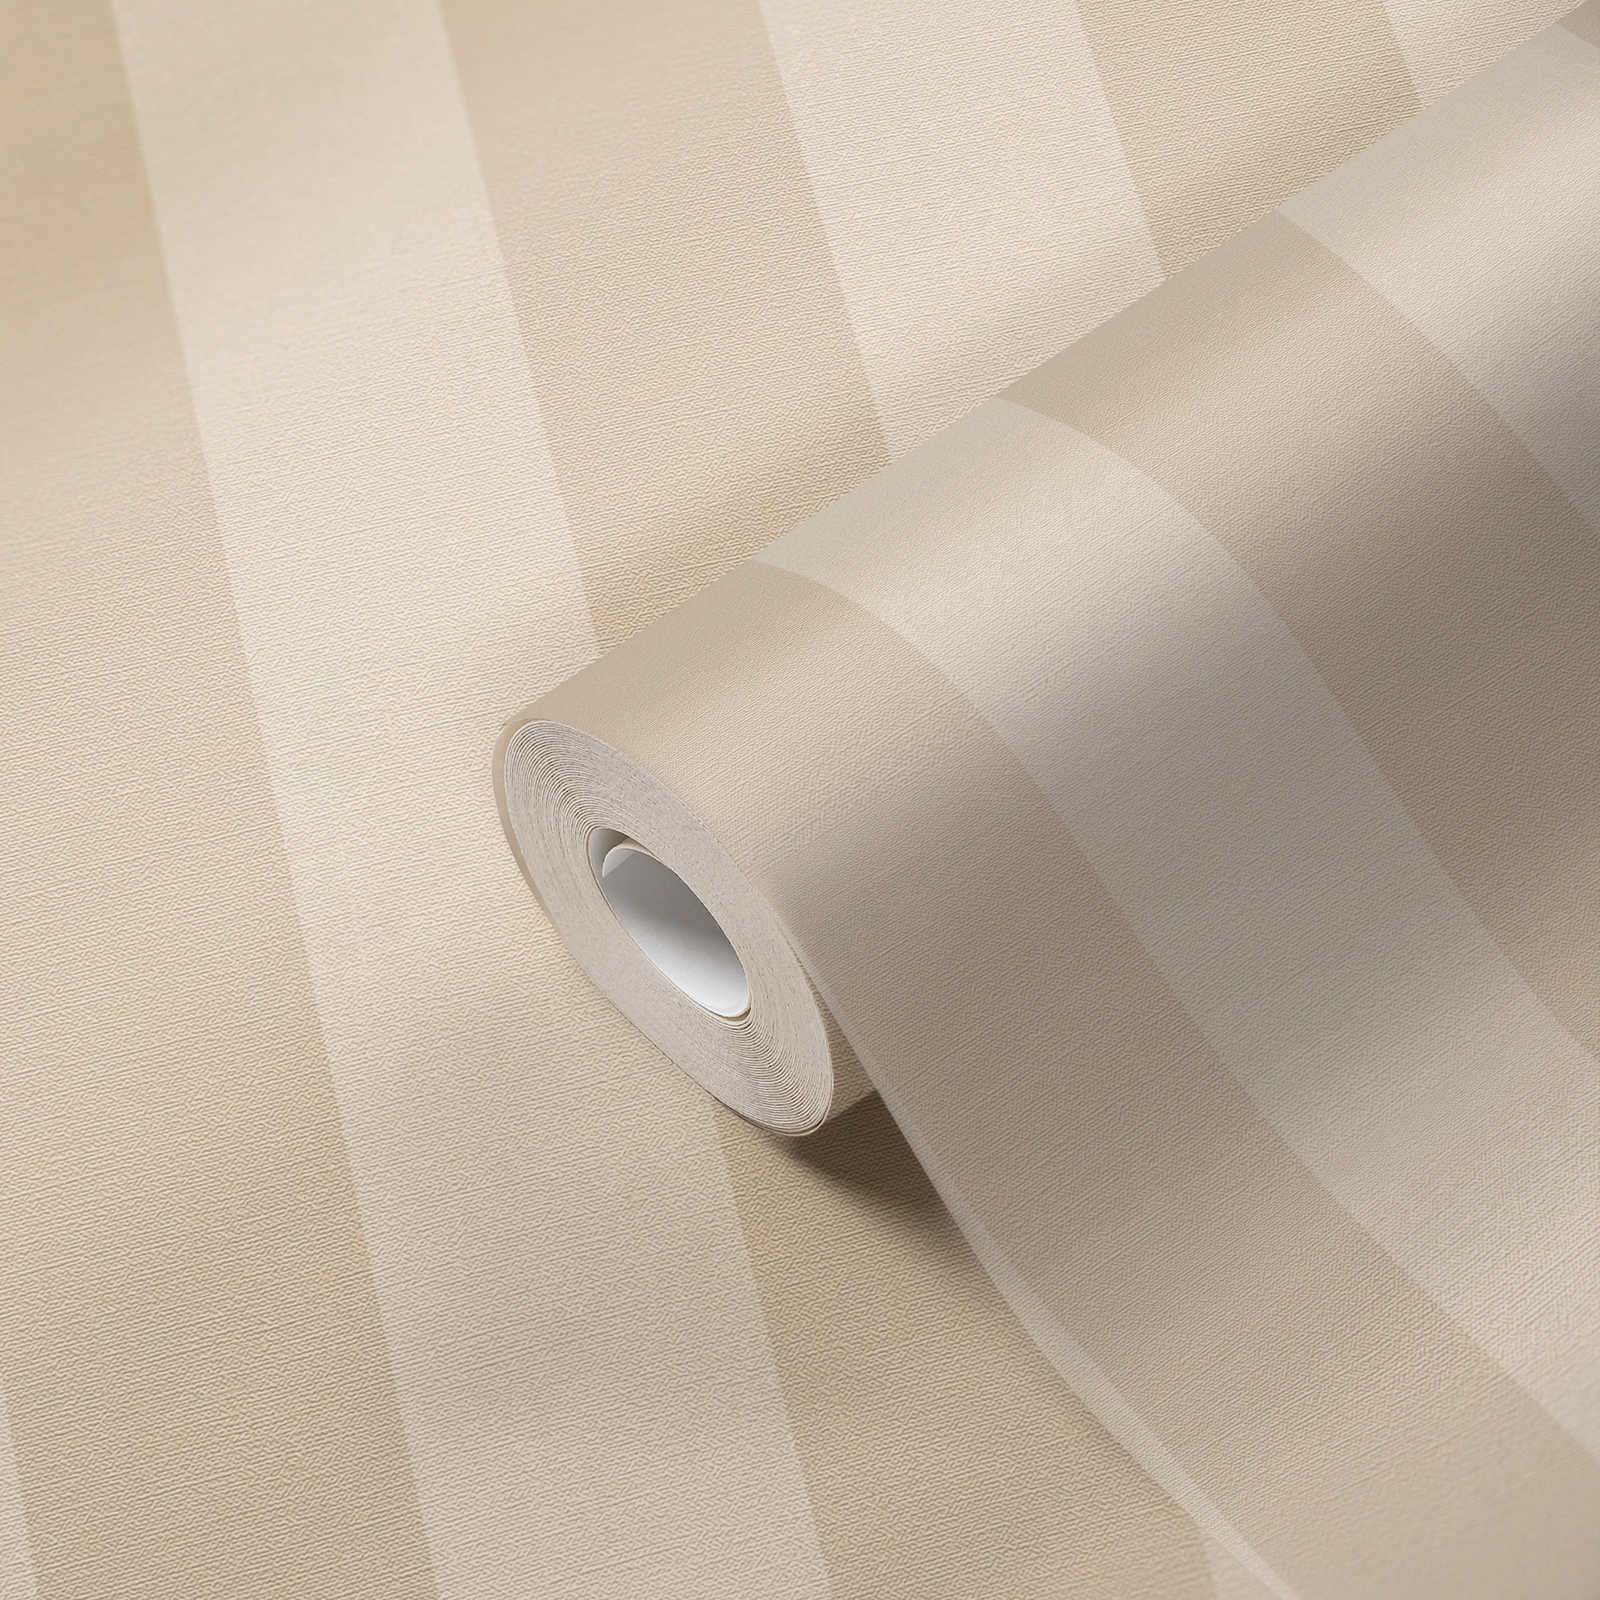             Vliesbehang met strepen en linnenlook PVC-vrij - beige, wit
        